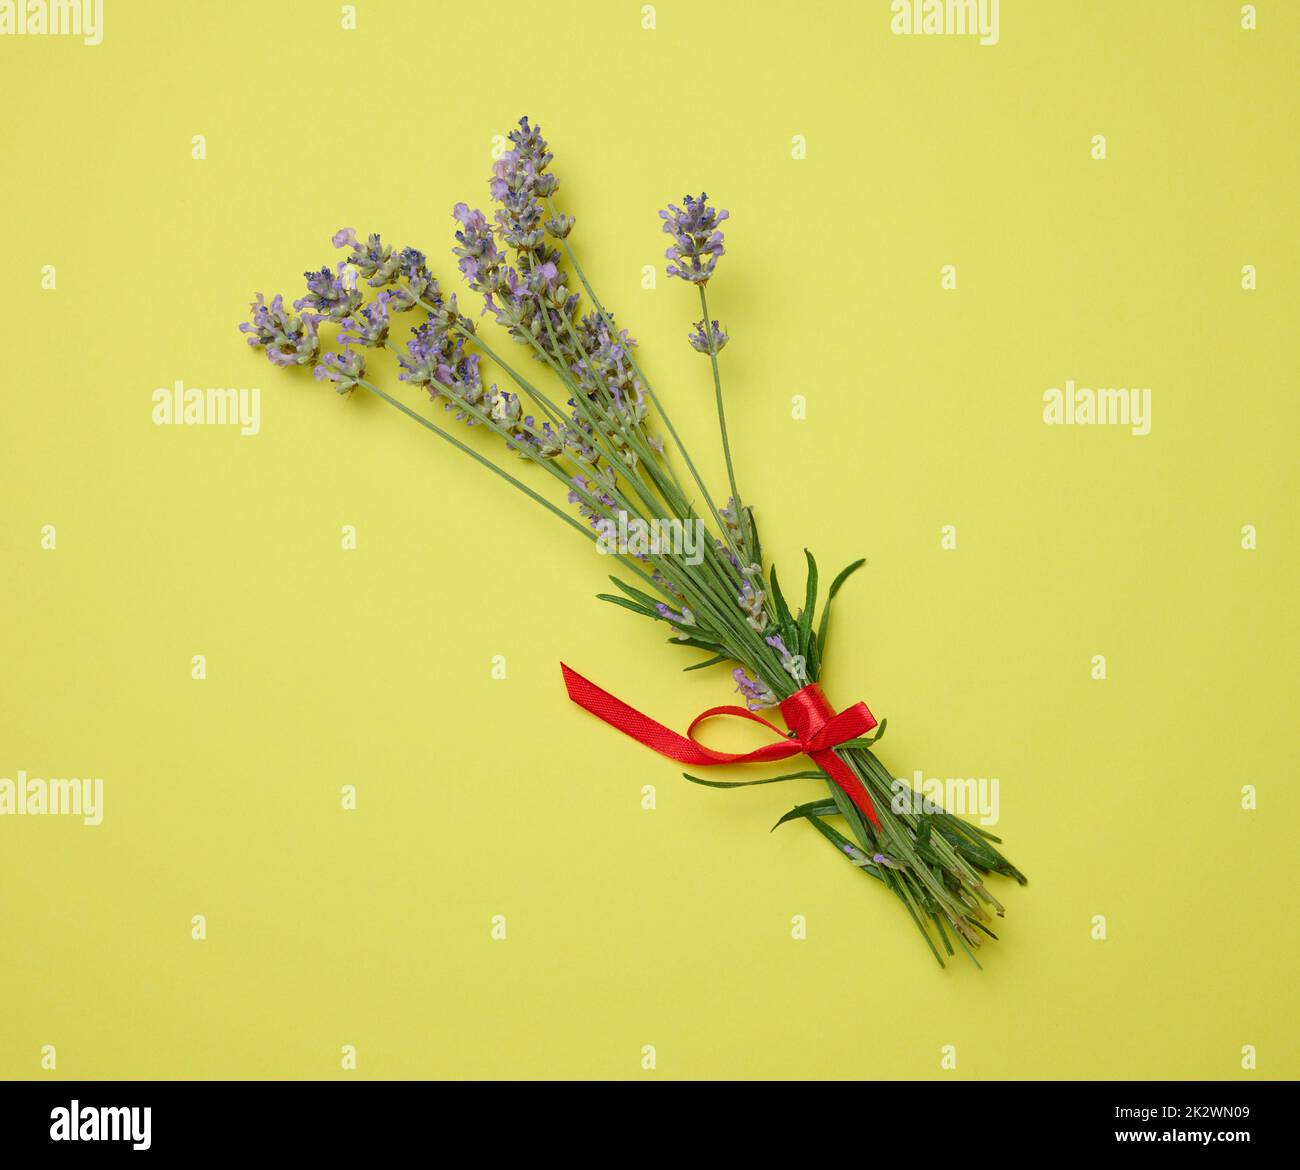 Lavendelstrauß gebunden mit einem roten Band auf grünem Hintergrund, Draufsicht Stockfoto